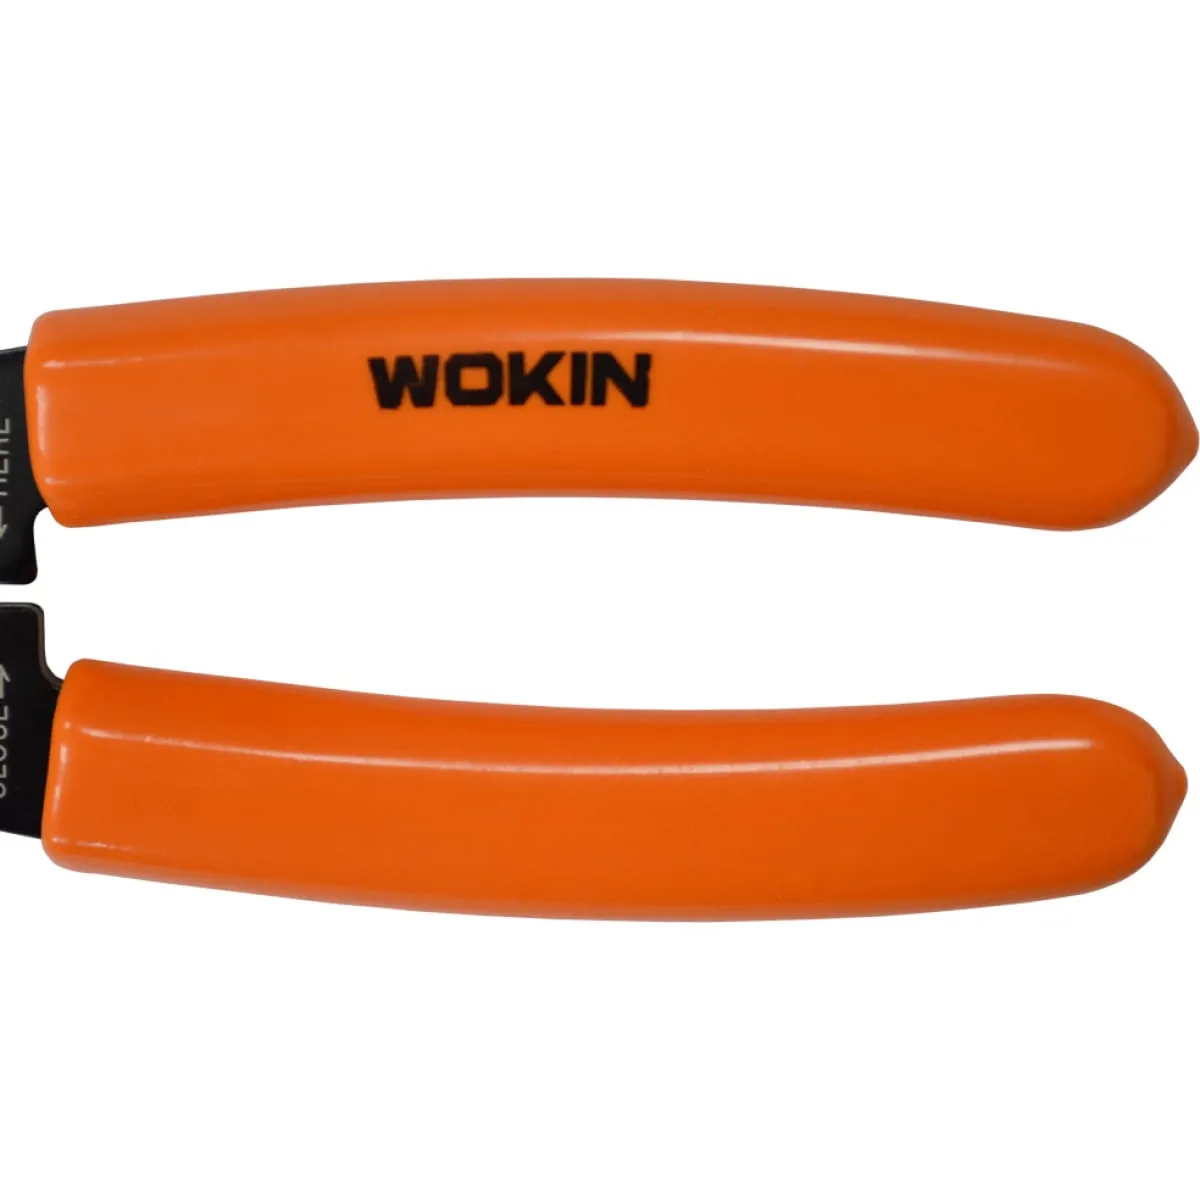 Cleste pentru dezizolare si sertizare cabluri WOKIN 215 mm (Industrial)